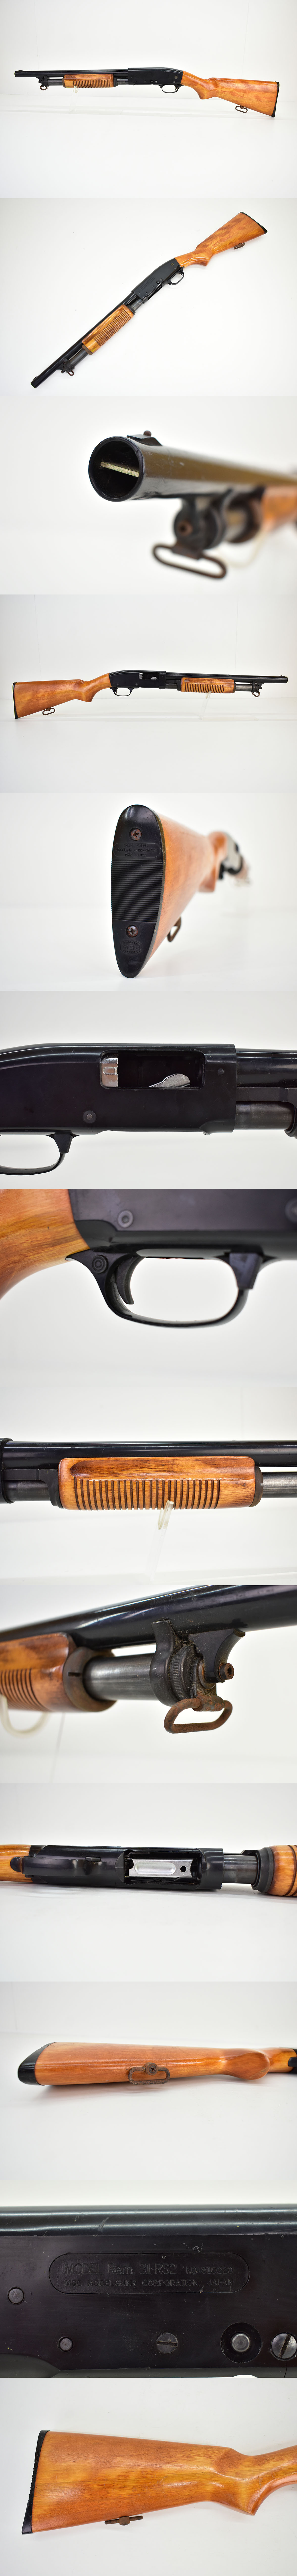 定番送料無料MGC Remington M31 RS2 モデルガン [ショットガン][レミントンM31][樹脂製]M モデルガン